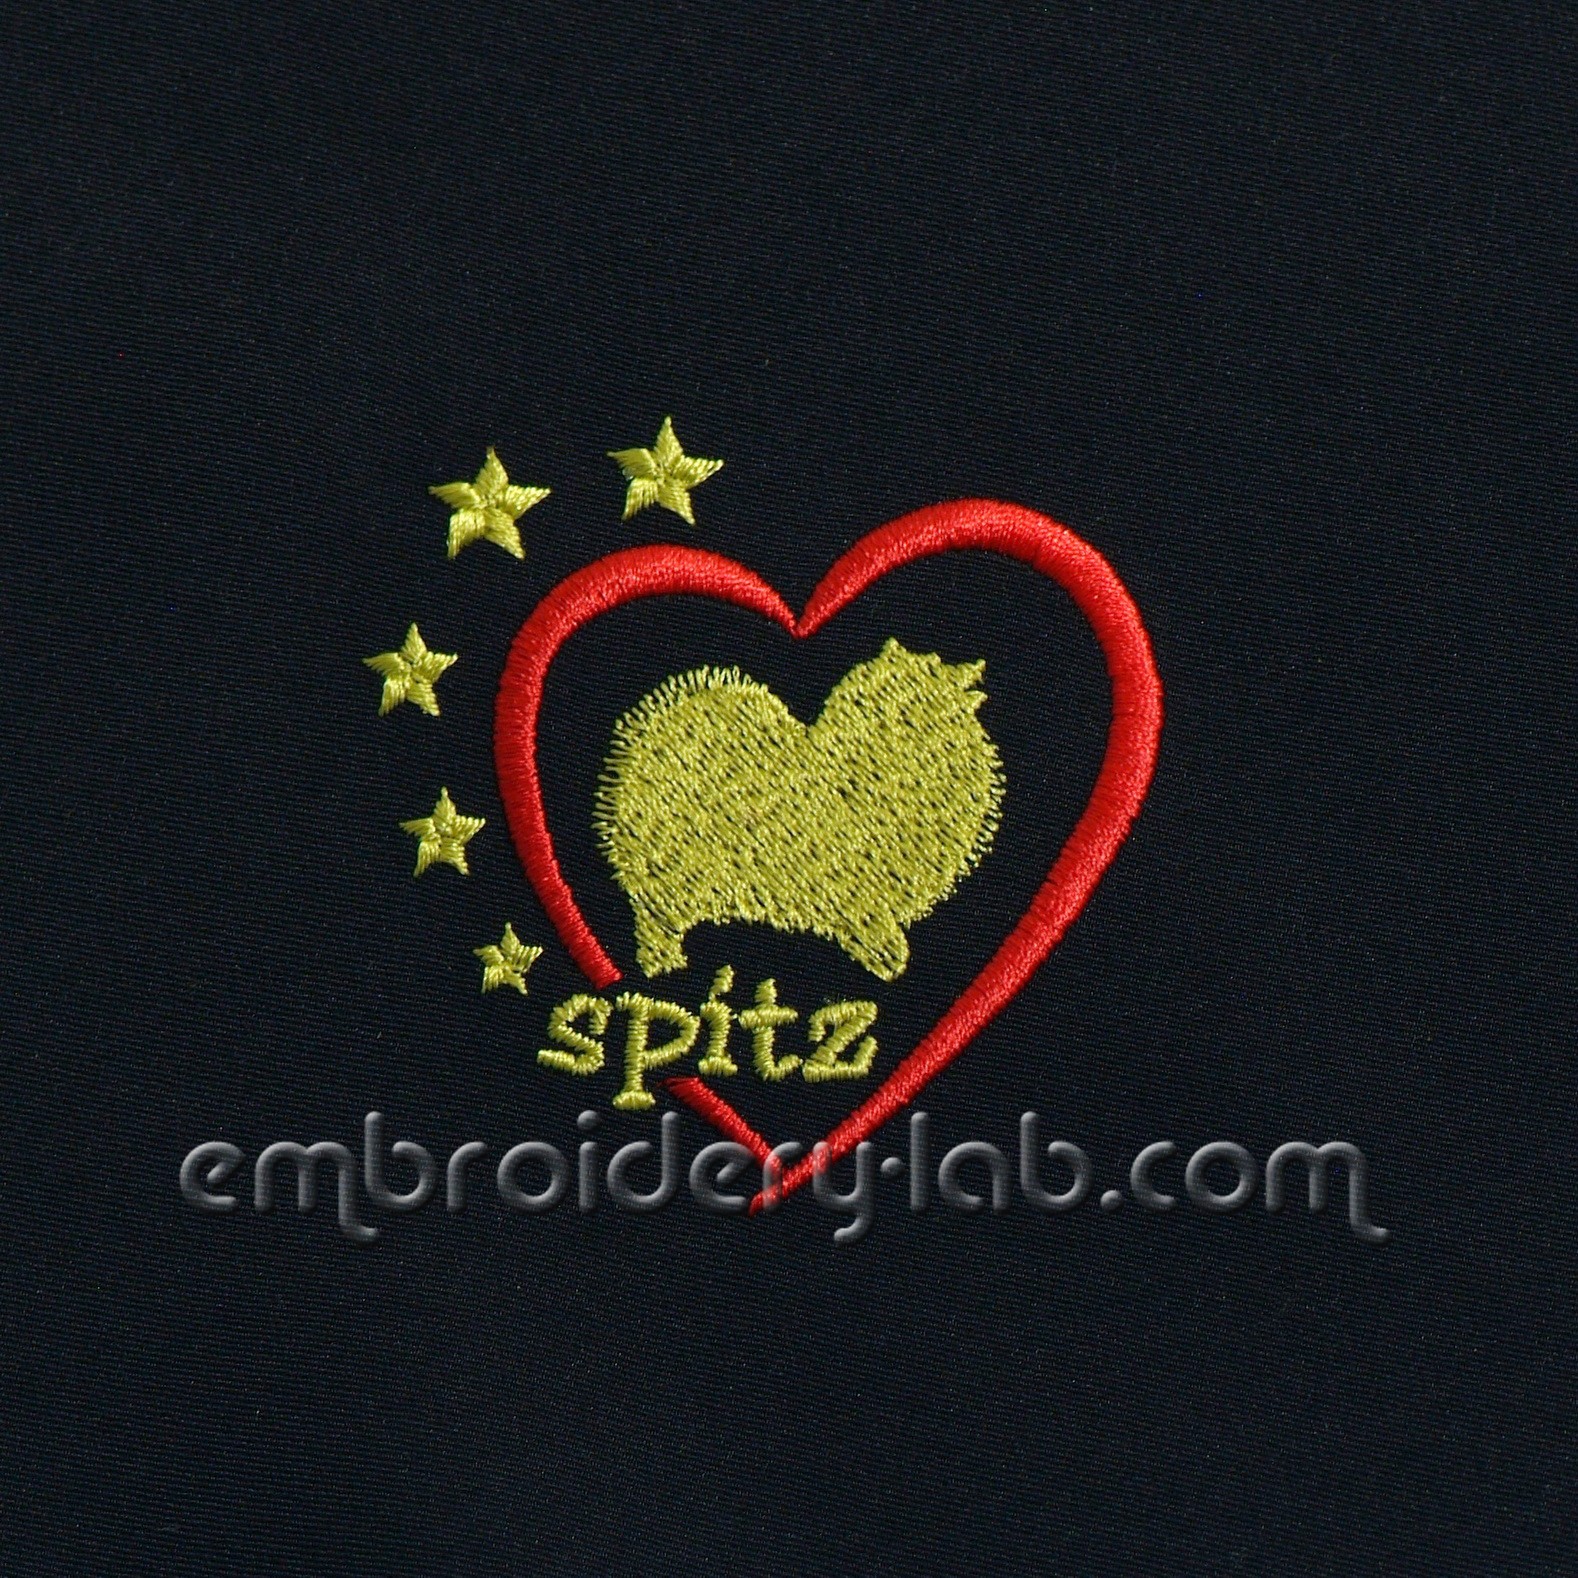 'Spitz' Emblem 0002